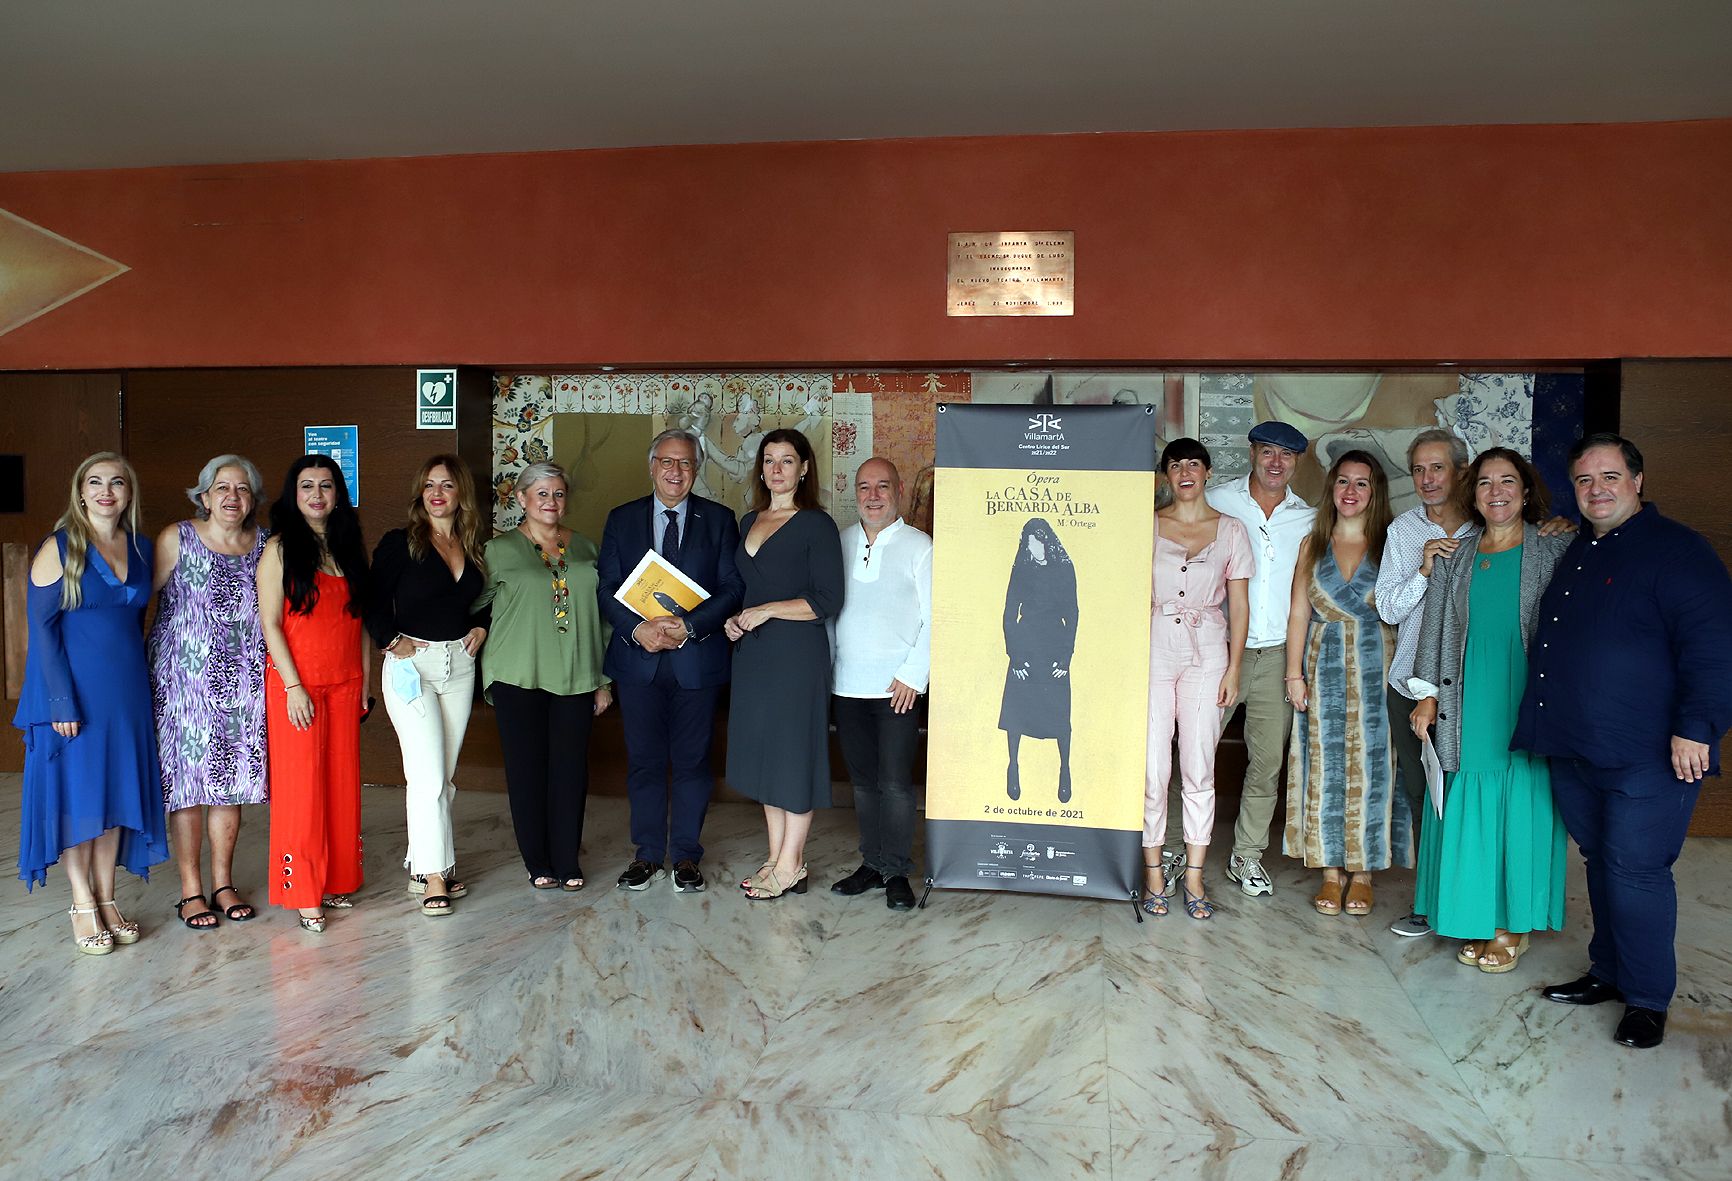 Presentación de La Casa de Bernarda Alba en el teatro Villamarta de Jerez.